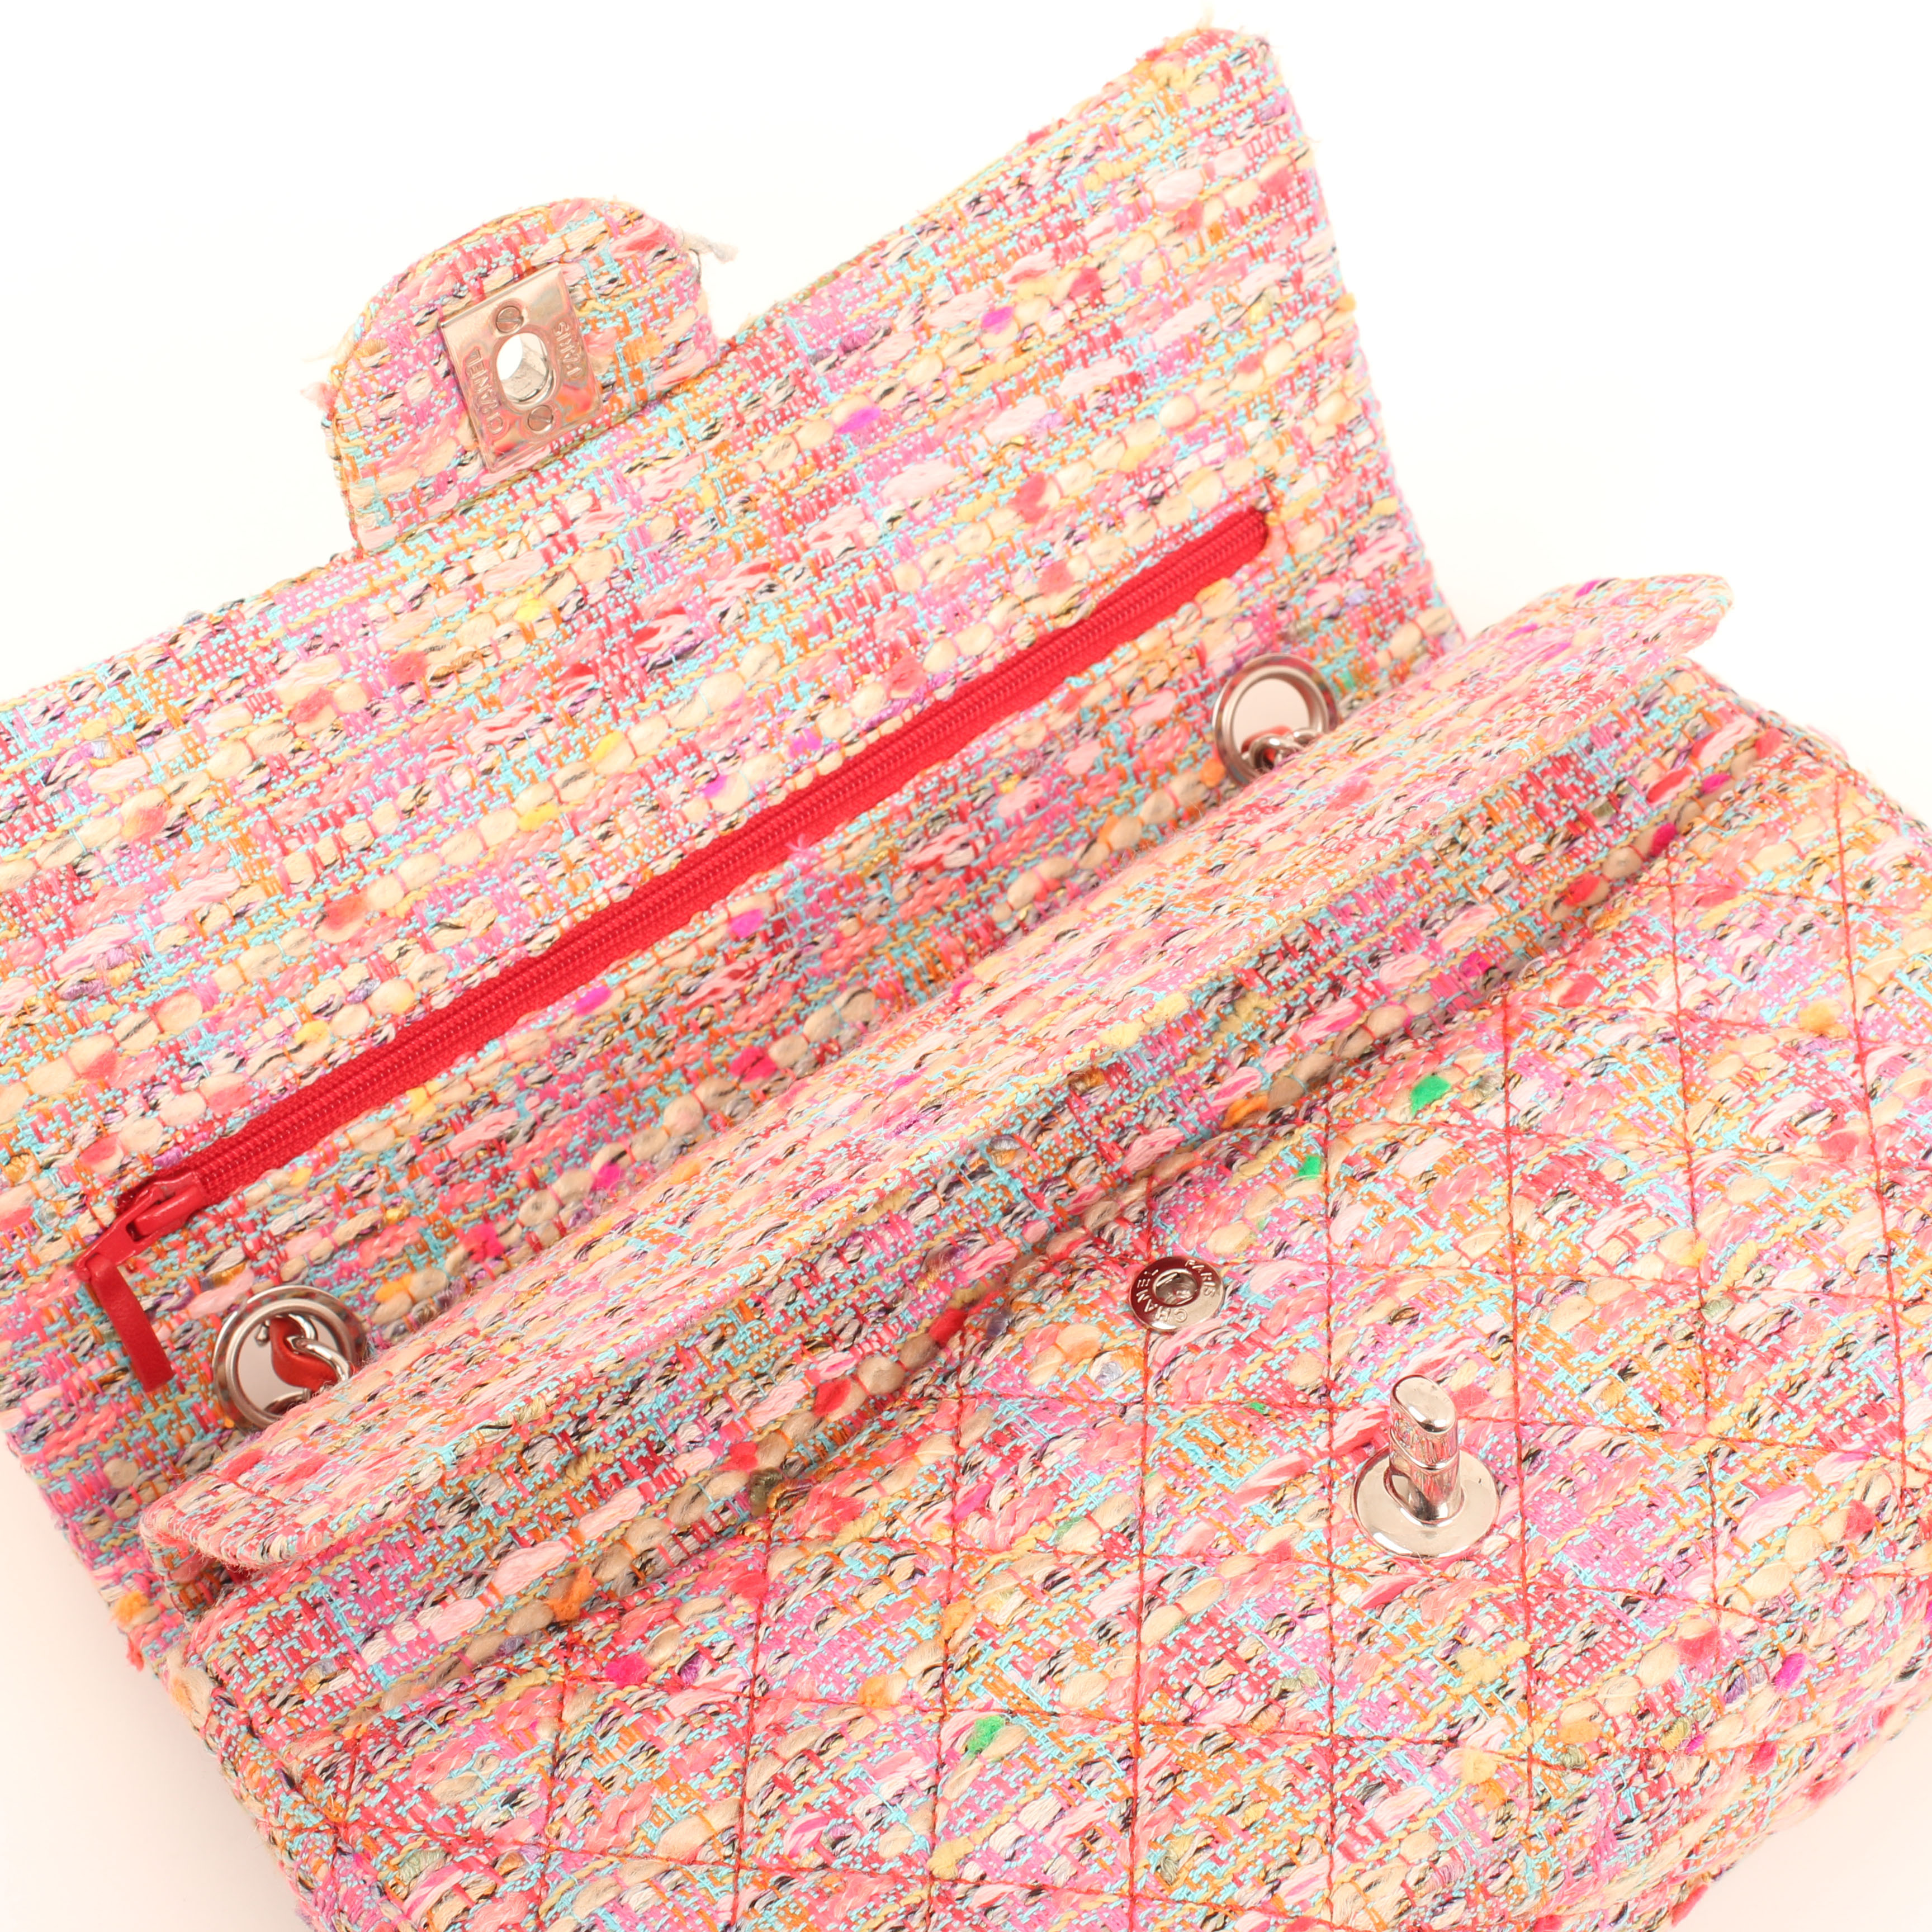 Imagen del bolso chanel timeless double flap en tweed rosa multicolor fluor abierto